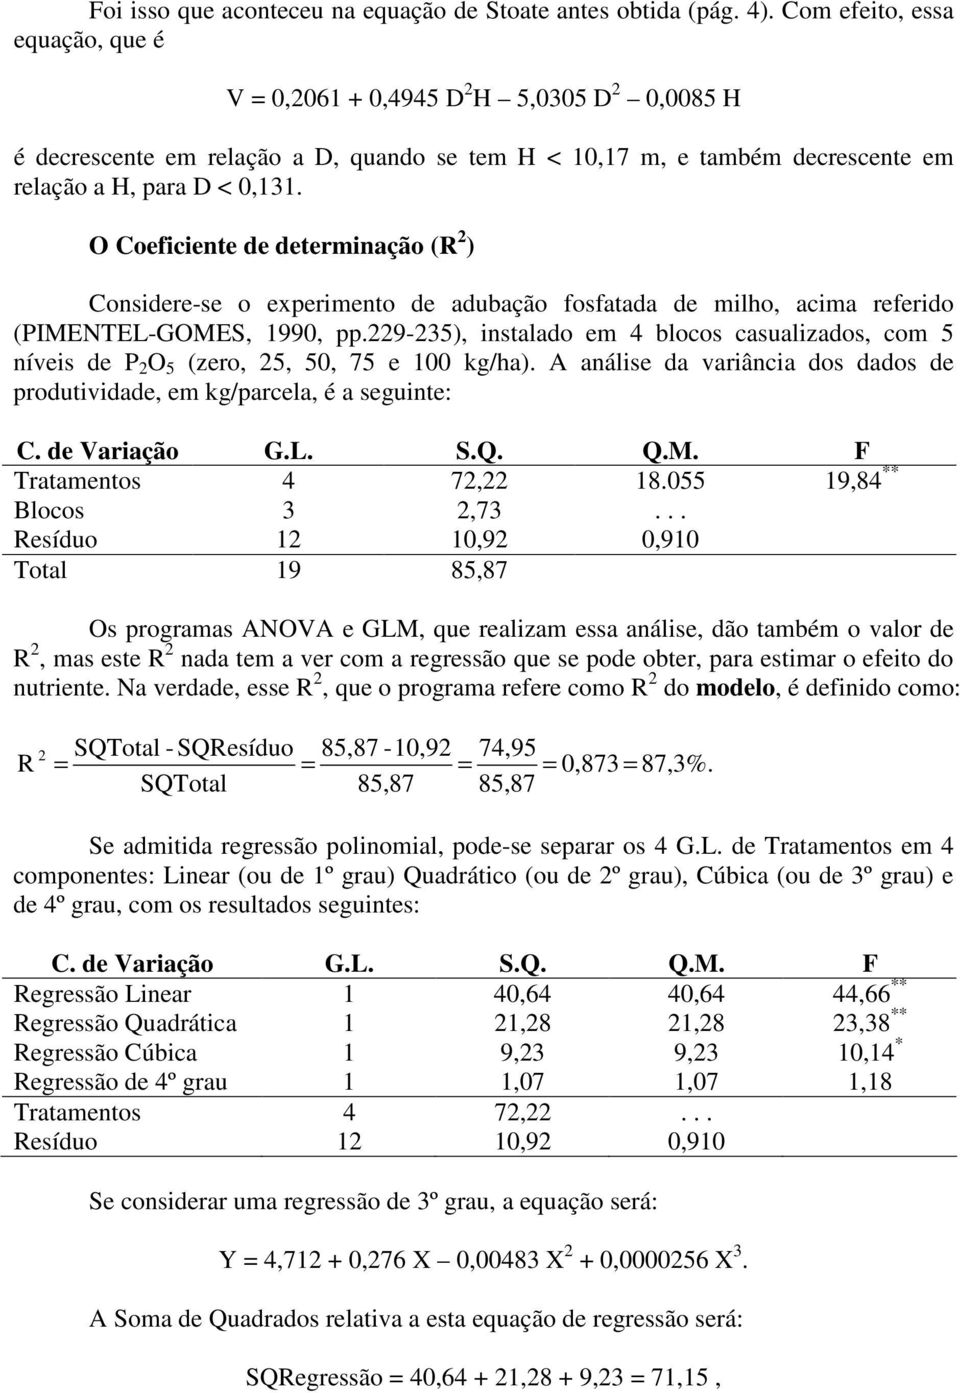 O Coeficiente de determinação (R ) Considere-se o experimento de adubação fosfatada de milho, acima referido (PIMENTEL-GOMES, 990, pp.